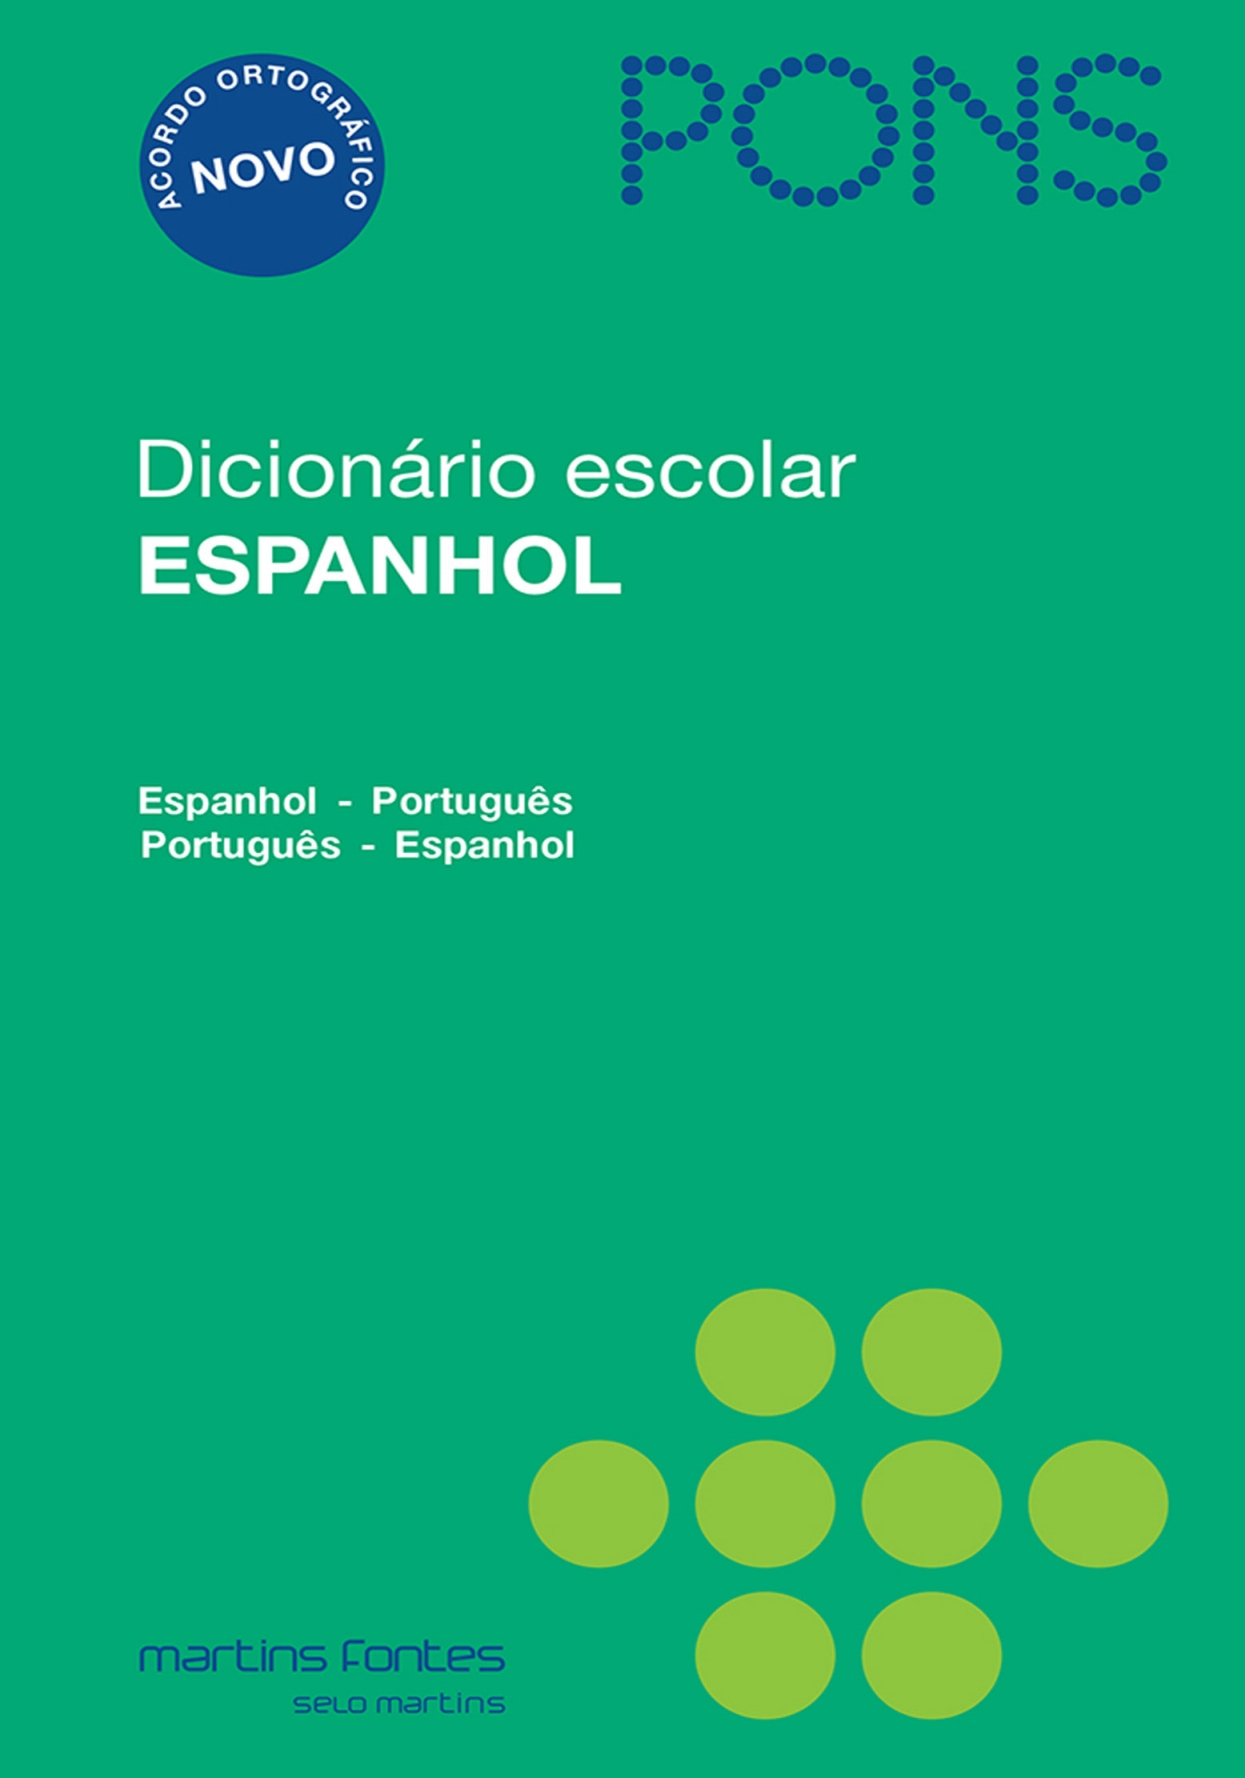 Dicionário escolar espanhol Pons - Espanhol/Português- Português/Espanhol  - Martins Fontes